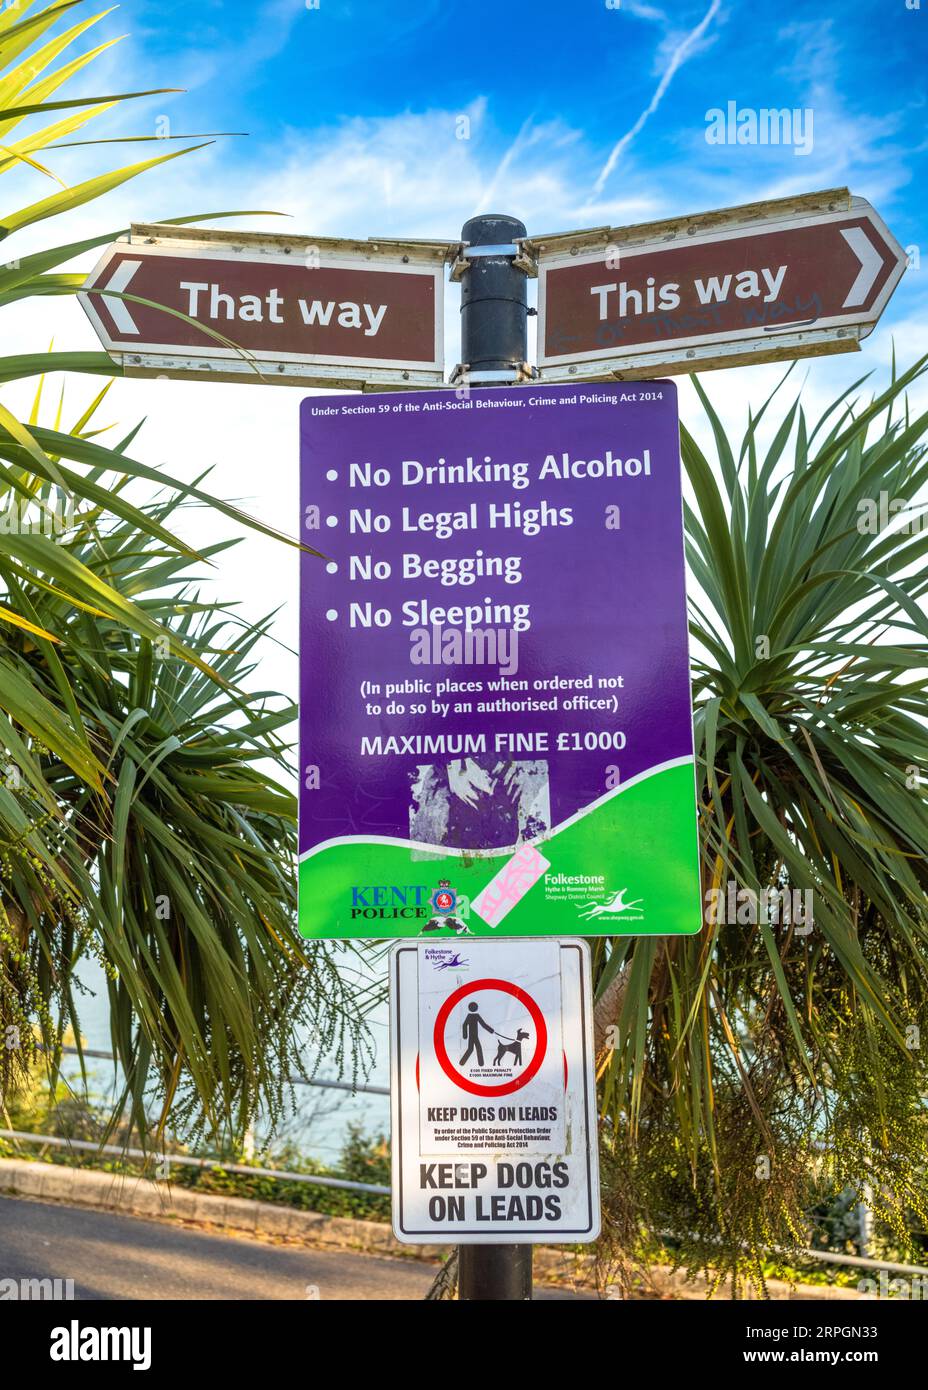 Warnschilder und Vorschriften für den Leas Clifftop Walk in Folkestione, Kent, Großbritannien. Kein Alkohol trinken, keine legalen Hochs, kein Betteln, kein Schlafen, halten d Stockfoto